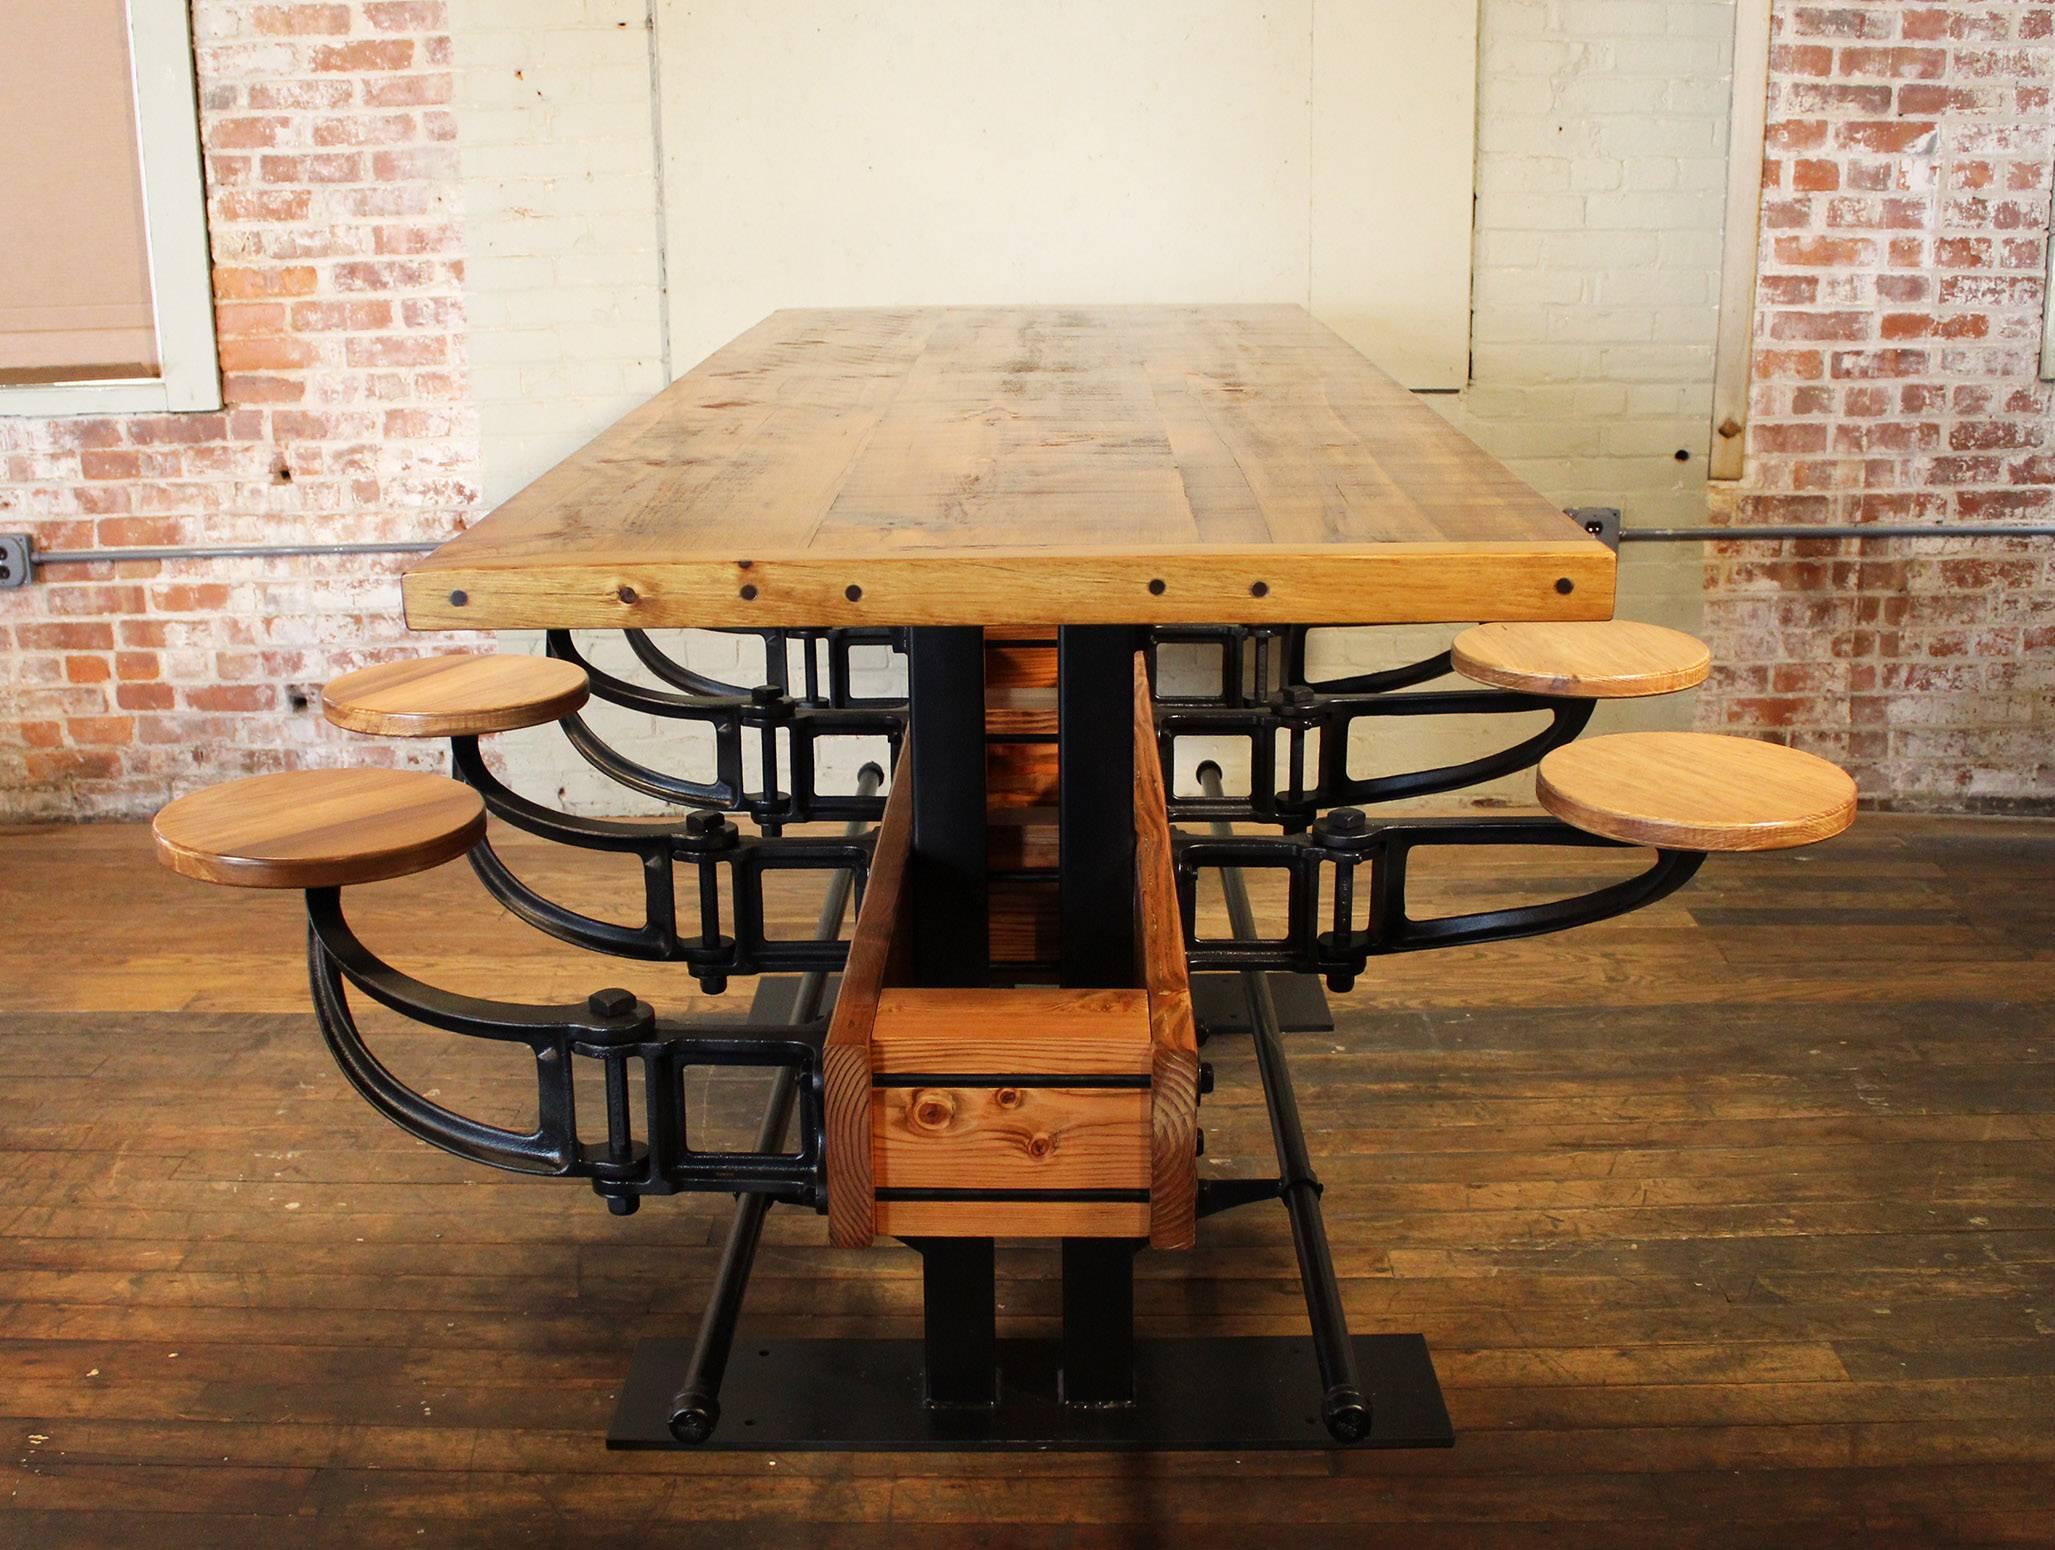 Ausklappbarer Sitz Restaurant Bar / Pub Höhe Tisch. Hergestellt aus Holz, Gusseisen und Stahl. Mit acht ausschwenkbaren Sitzen aus Gusseisen und Holz, Fußleisten und einer 2